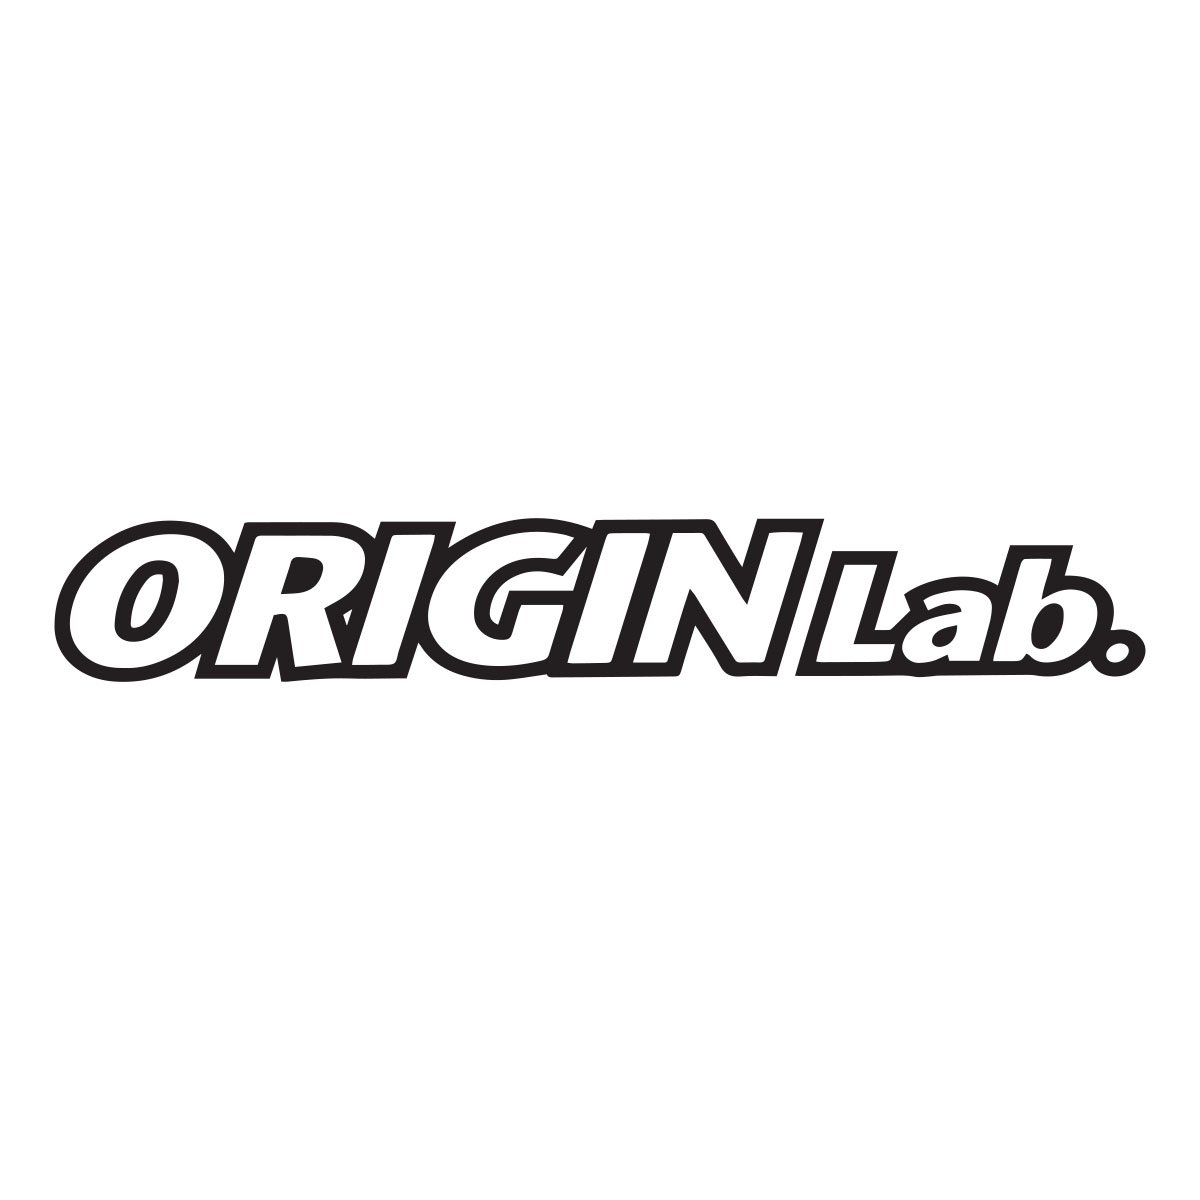 origin lab logo